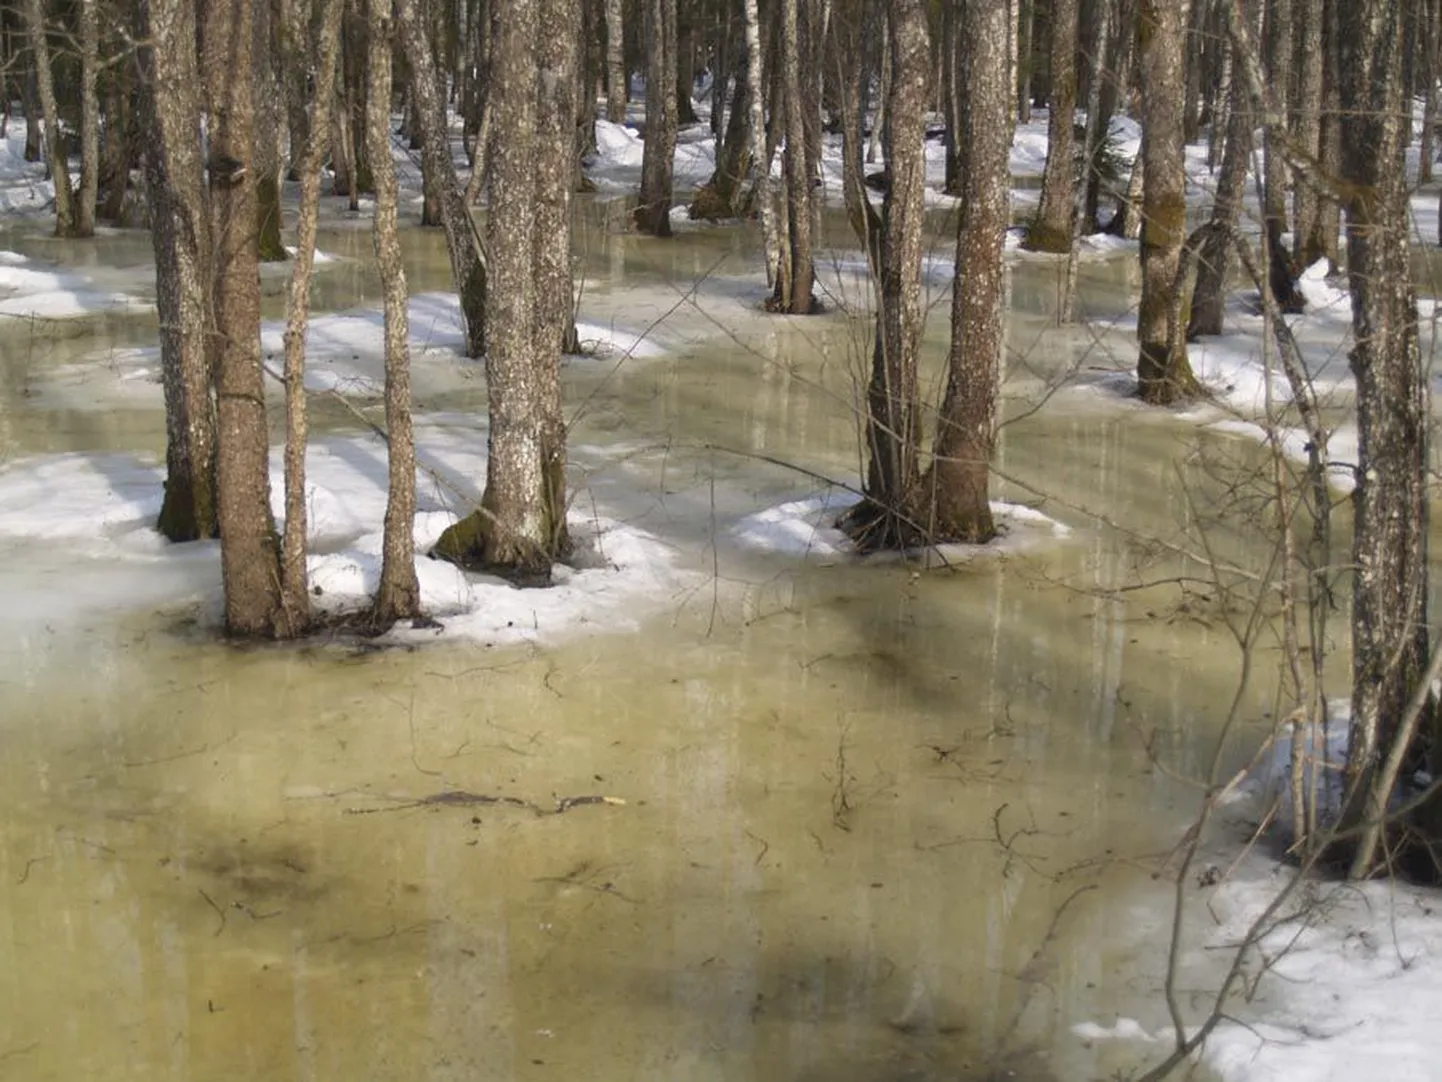 Enamasti on Soomaal jõed veel kenasti sängis, kuid Härmal on vesi juba metsa alla tunginud. Soomaa turismiettevõtja Aivar Ruukli ennustuse järgi peaks kõige suurem üleujutus kohale jõudma 15. aprilli paiku.